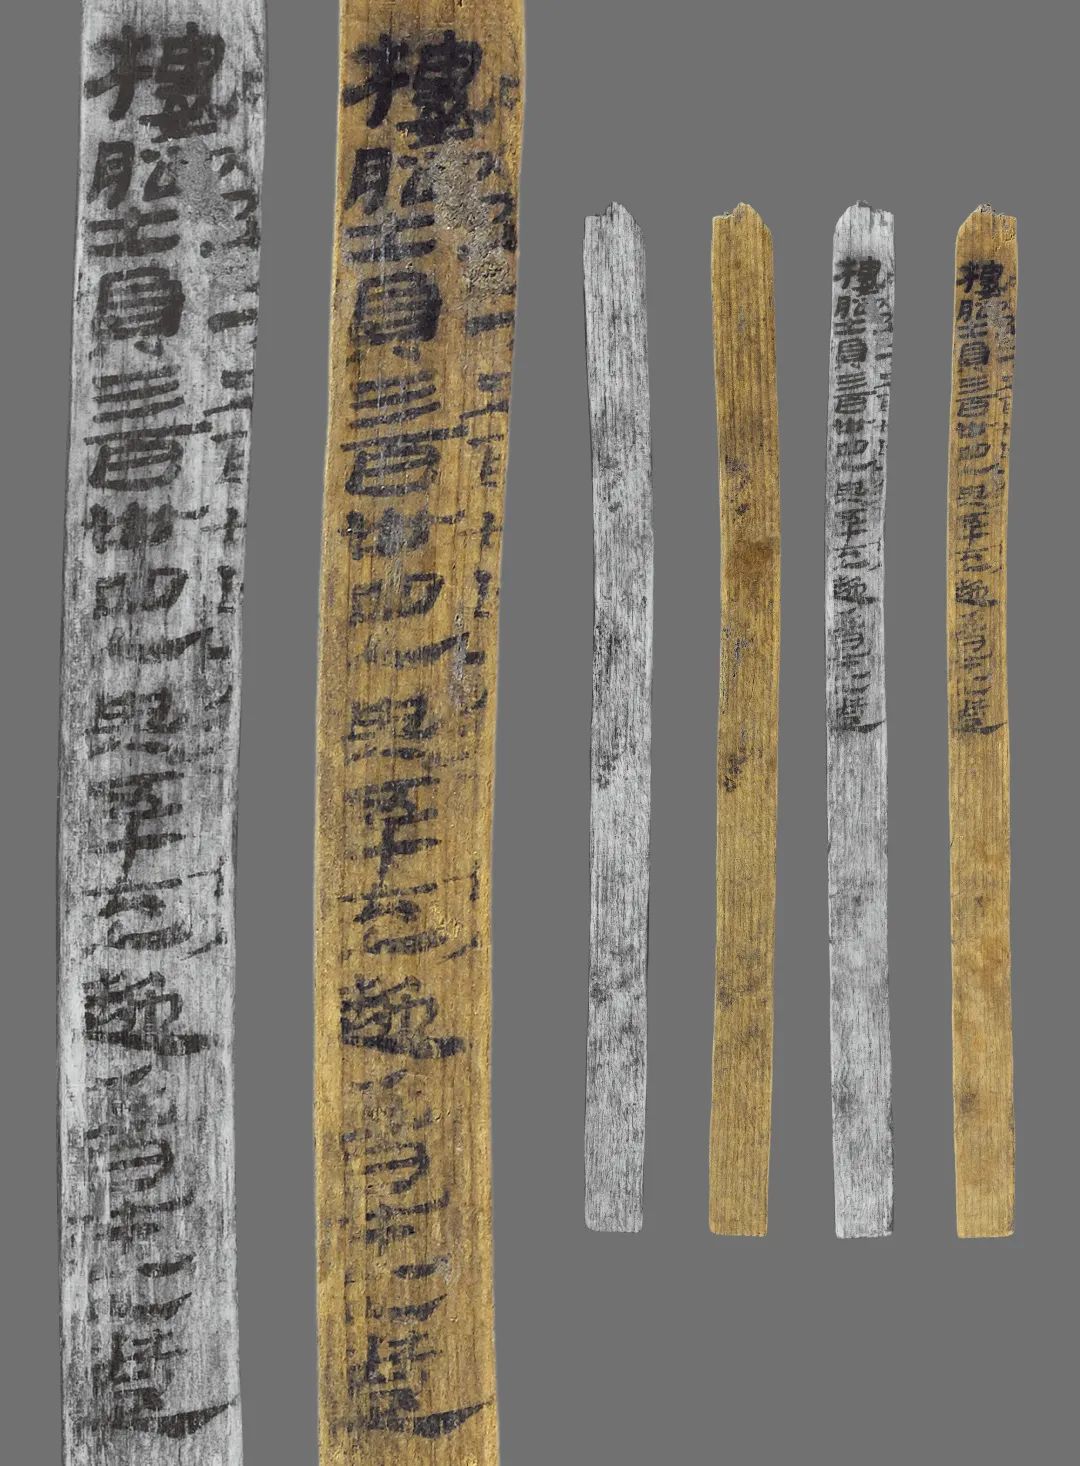 Naskah Kuno di Potongan Bambu Diteliti-Image-1